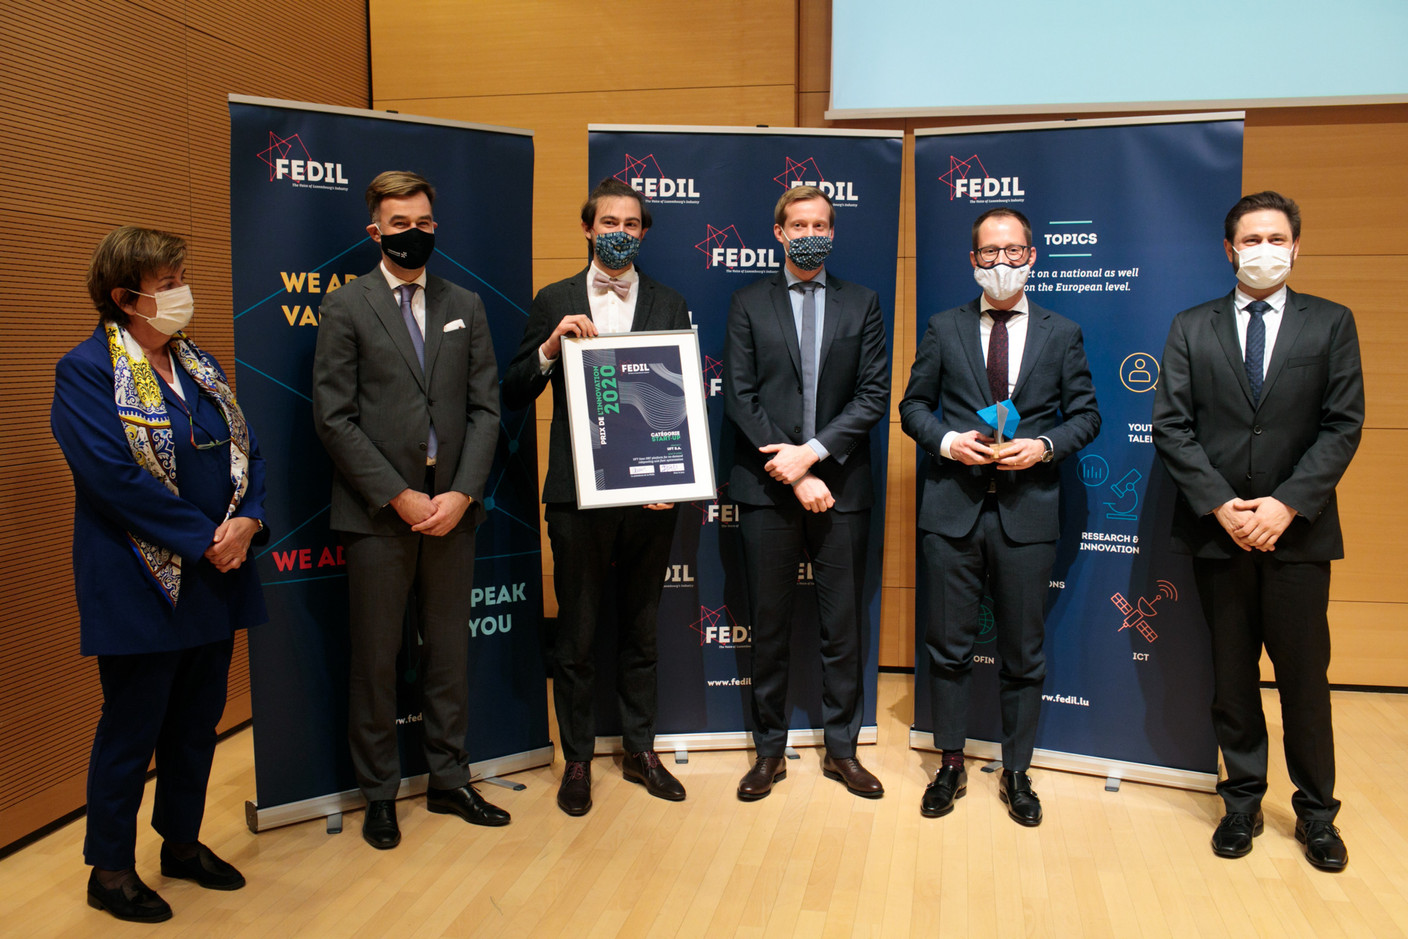 UFT a décroché le Prix de l’innovation dans la catégorie dédiée aux start-up. (Photo: Matic Zorman / Maison Moderne)